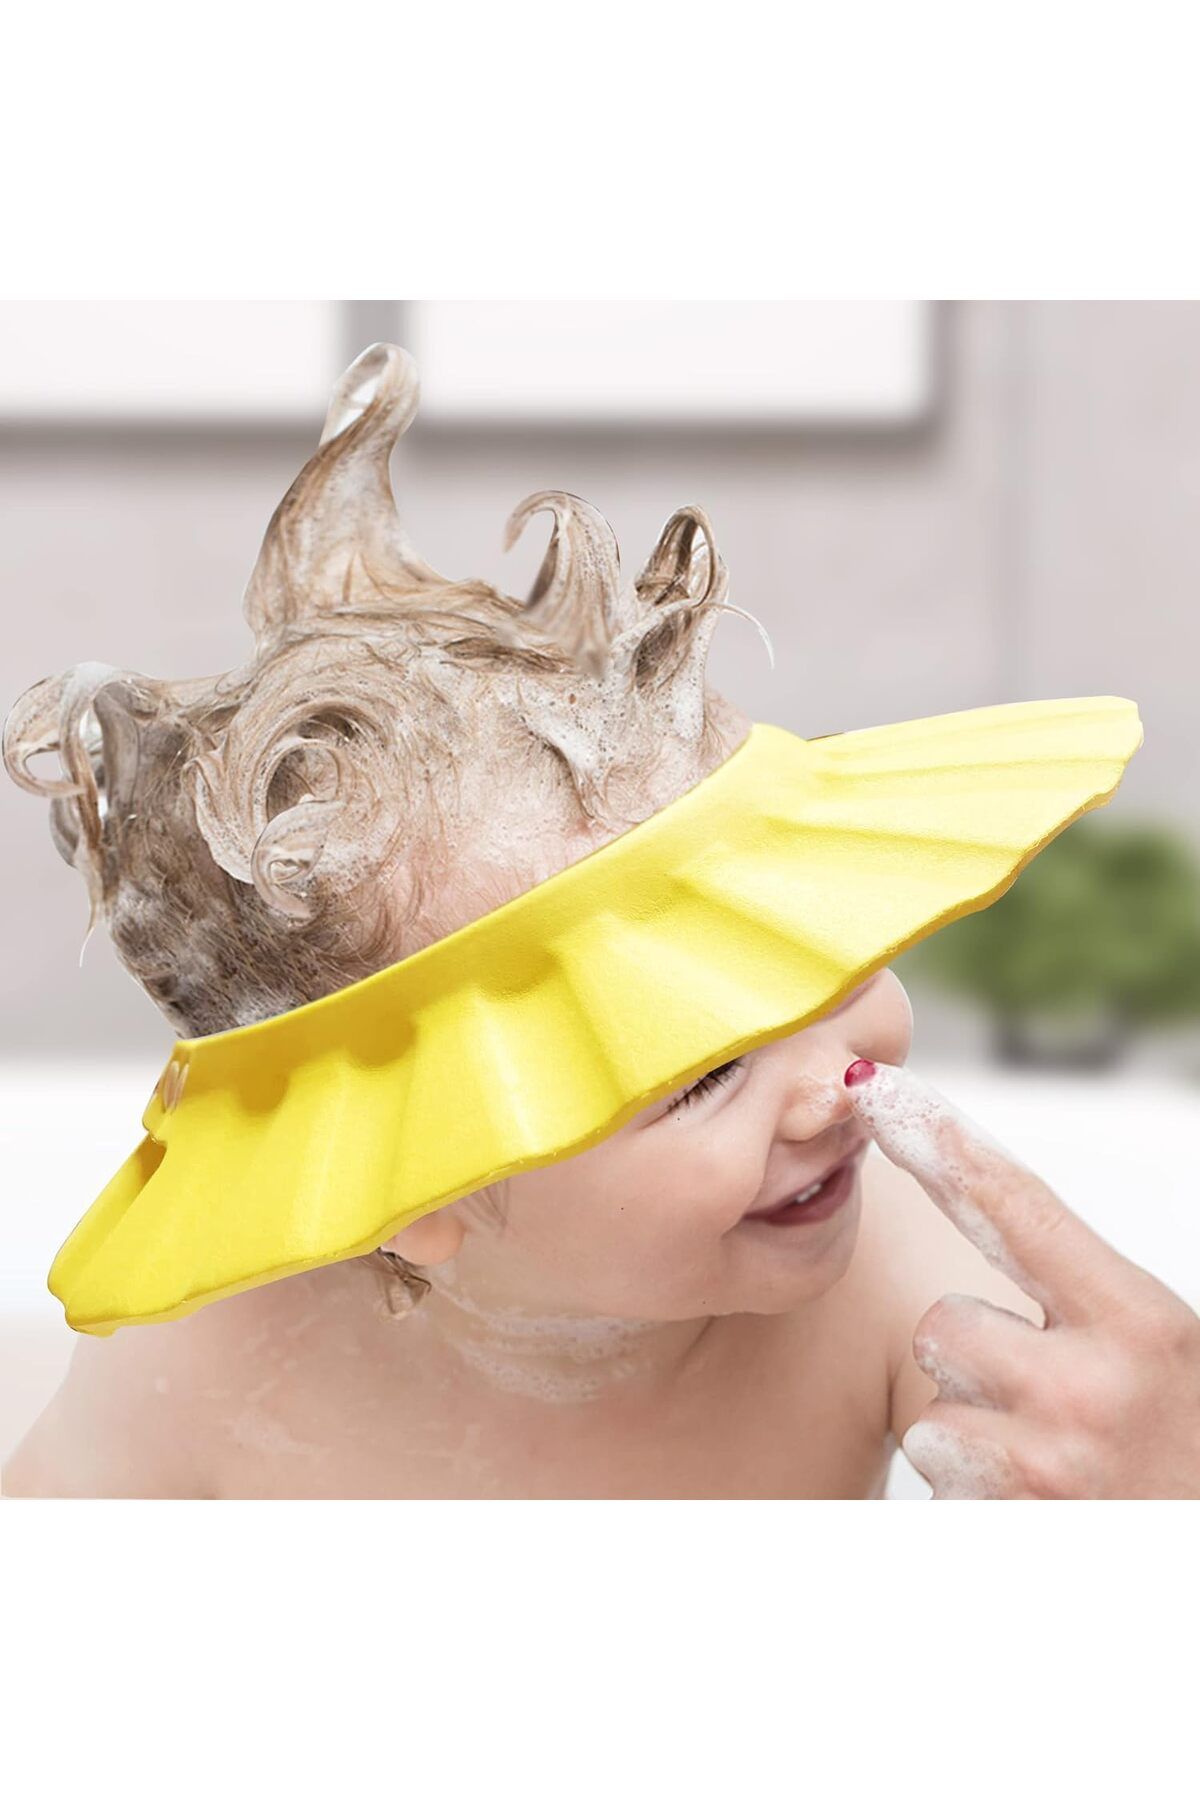 Miningaa Bebek Duş Başlığı, Bebek Güneş Şapkası Göz, Ağız Ve Kulaklara Su Kaçmasını Önleyeci Sarı Şapka.